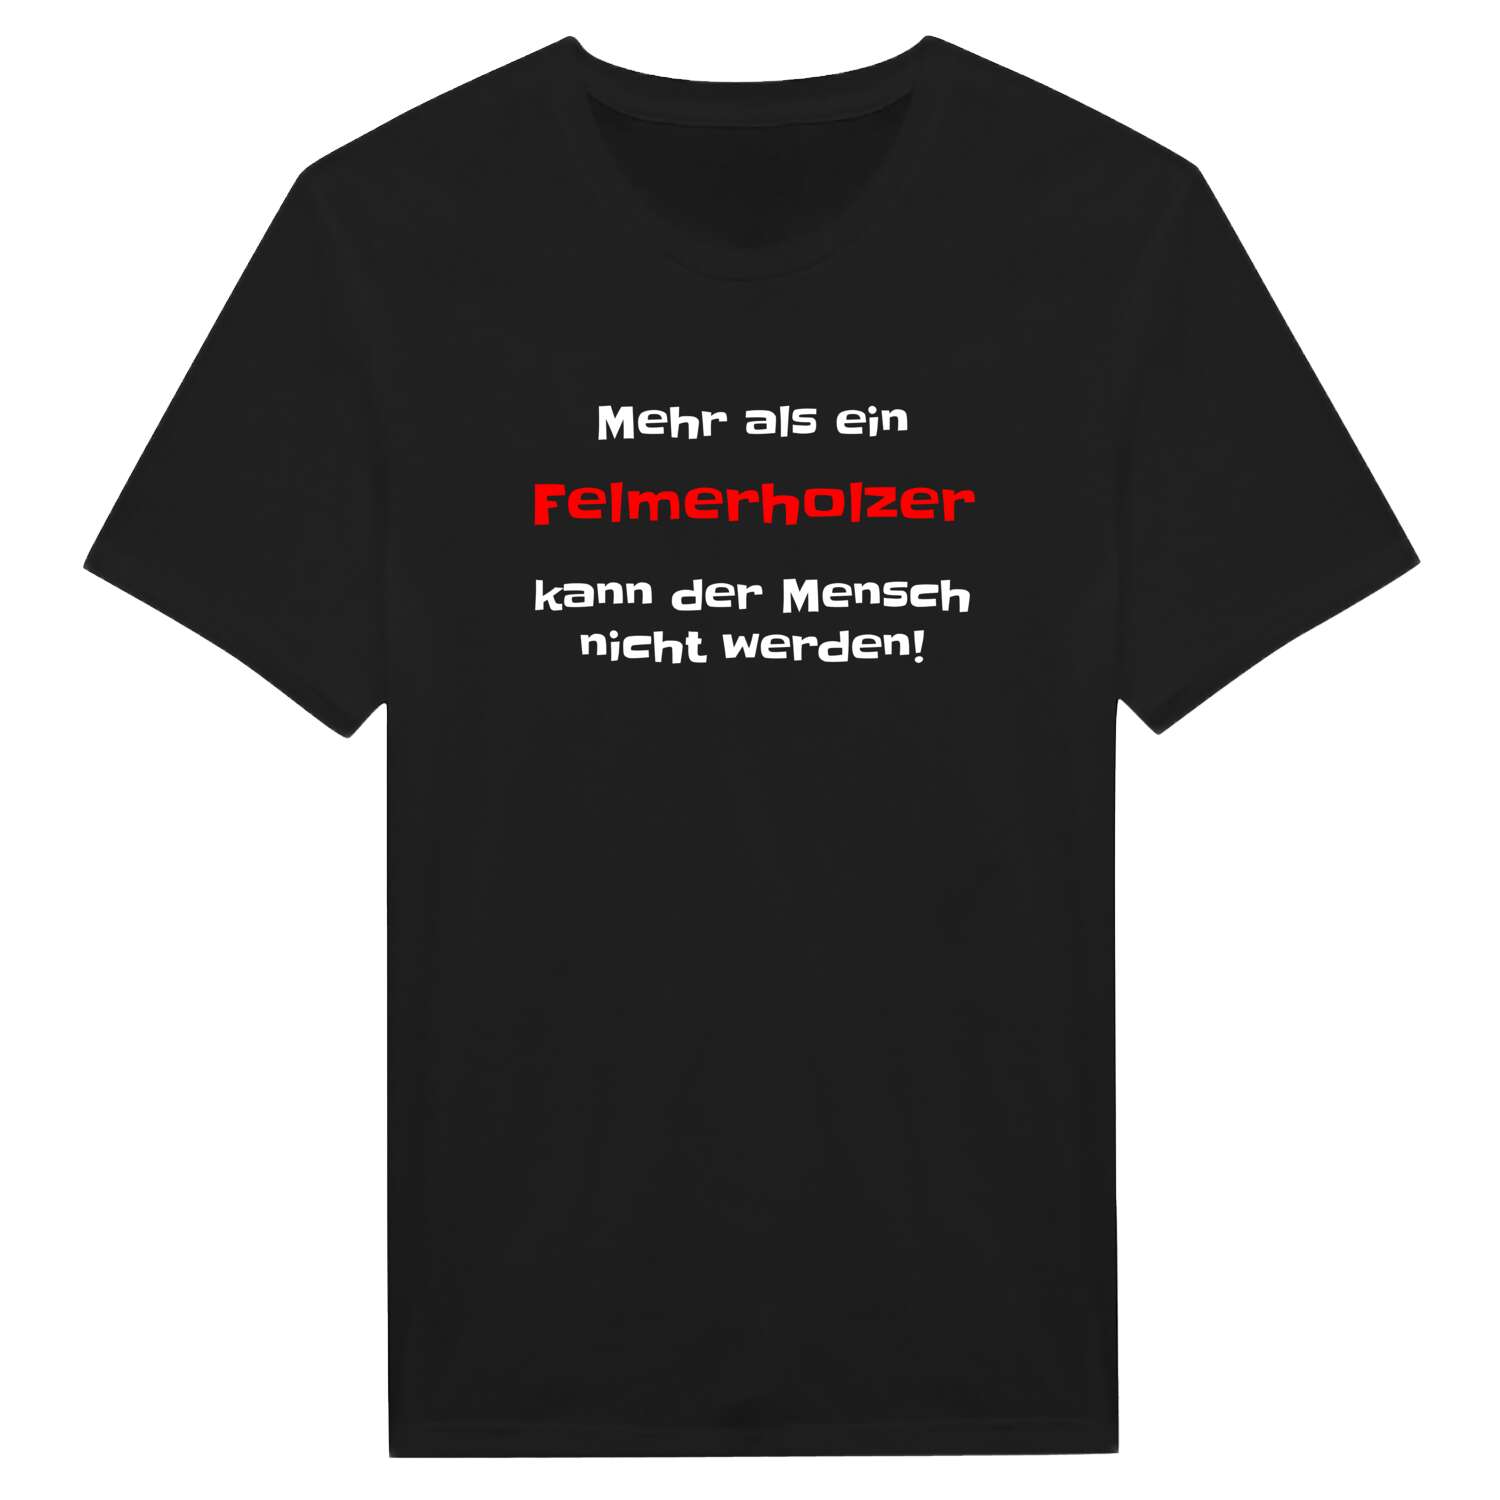 Felmerholz T-Shirt »Mehr als ein«